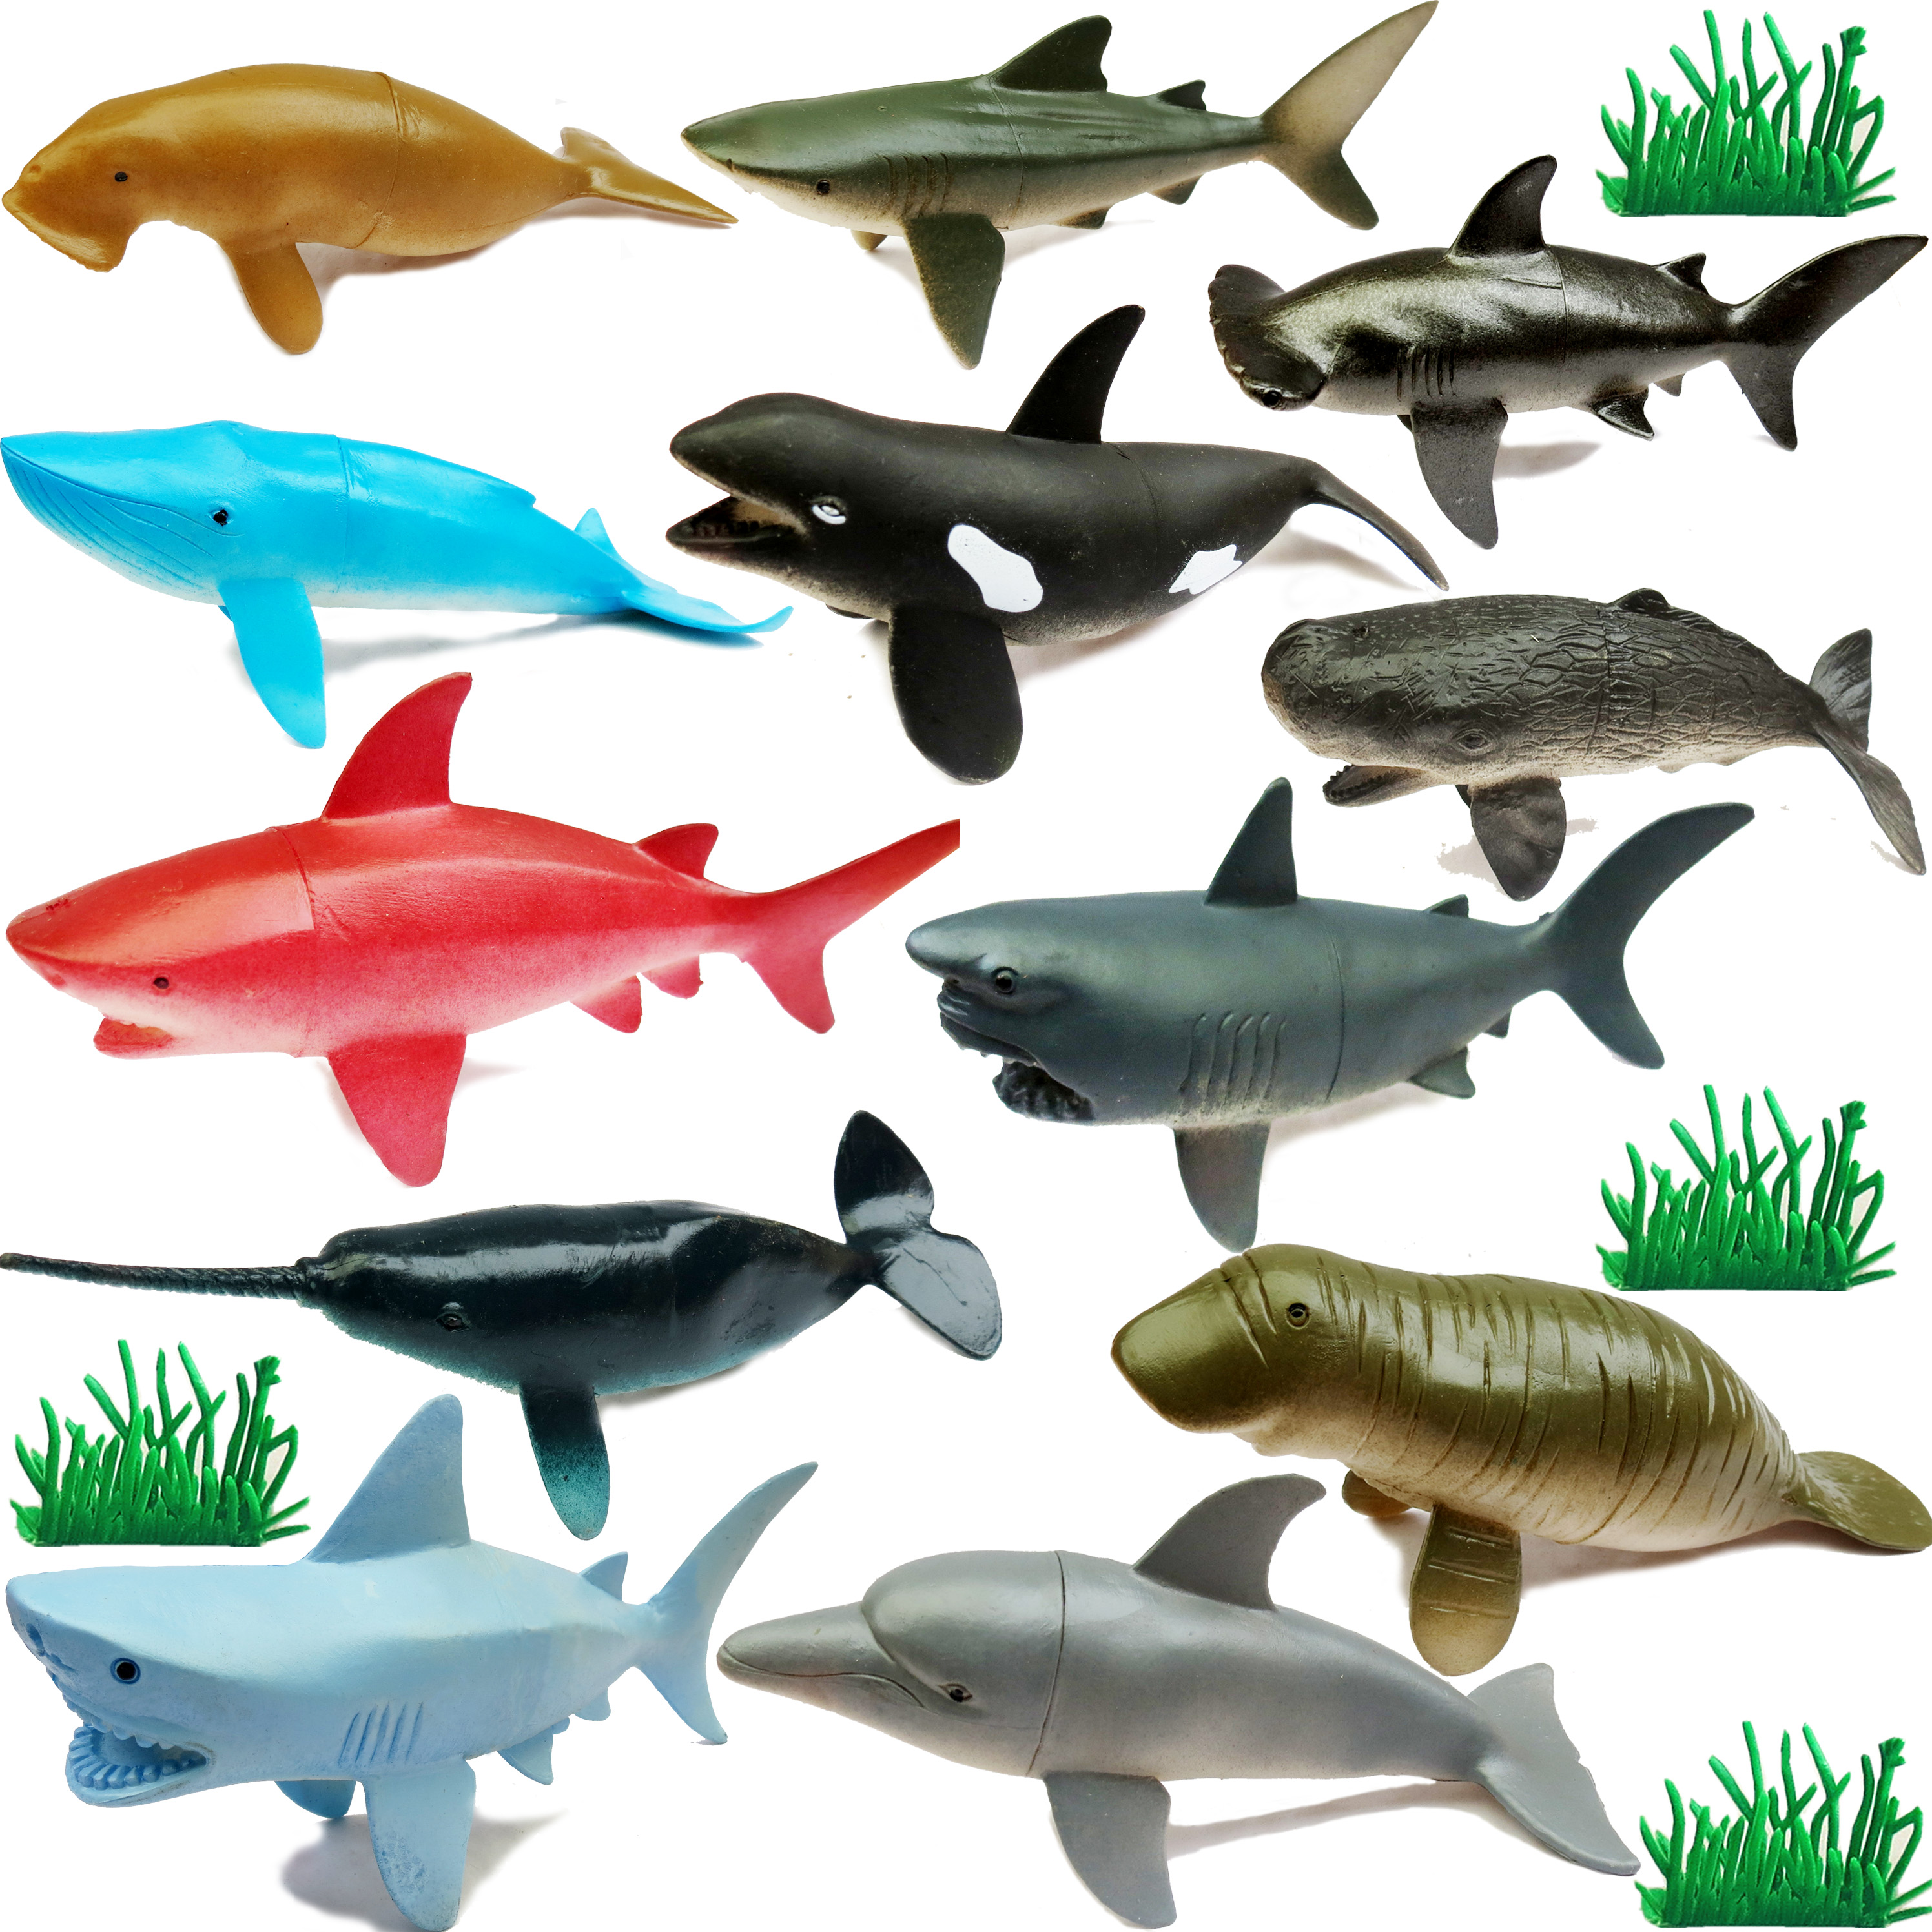 大鲨鱼套装海洋生物动物模型鲸鲨海豚大白鲨虎鲨青鲨儿童玩具教具